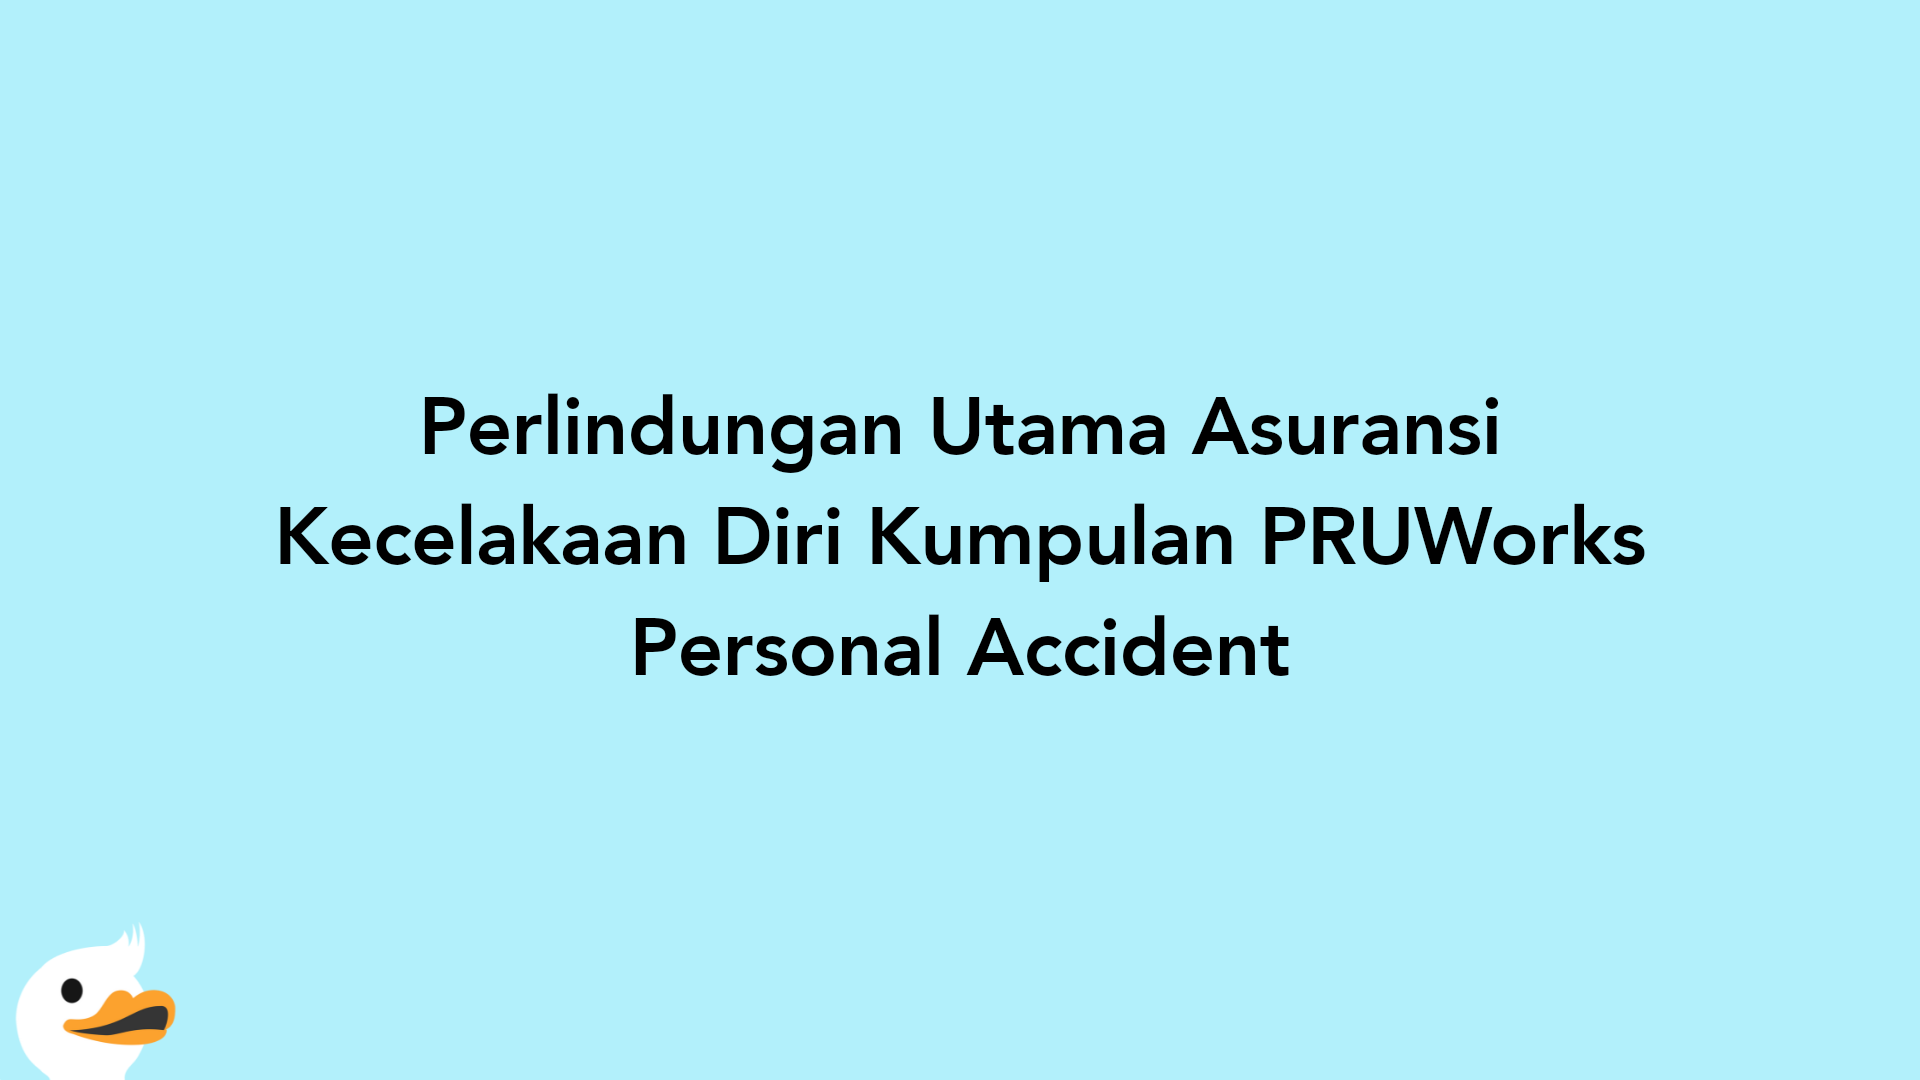 Perlindungan Utama Asuransi Kecelakaan Diri Kumpulan PRUWorks Personal Accident